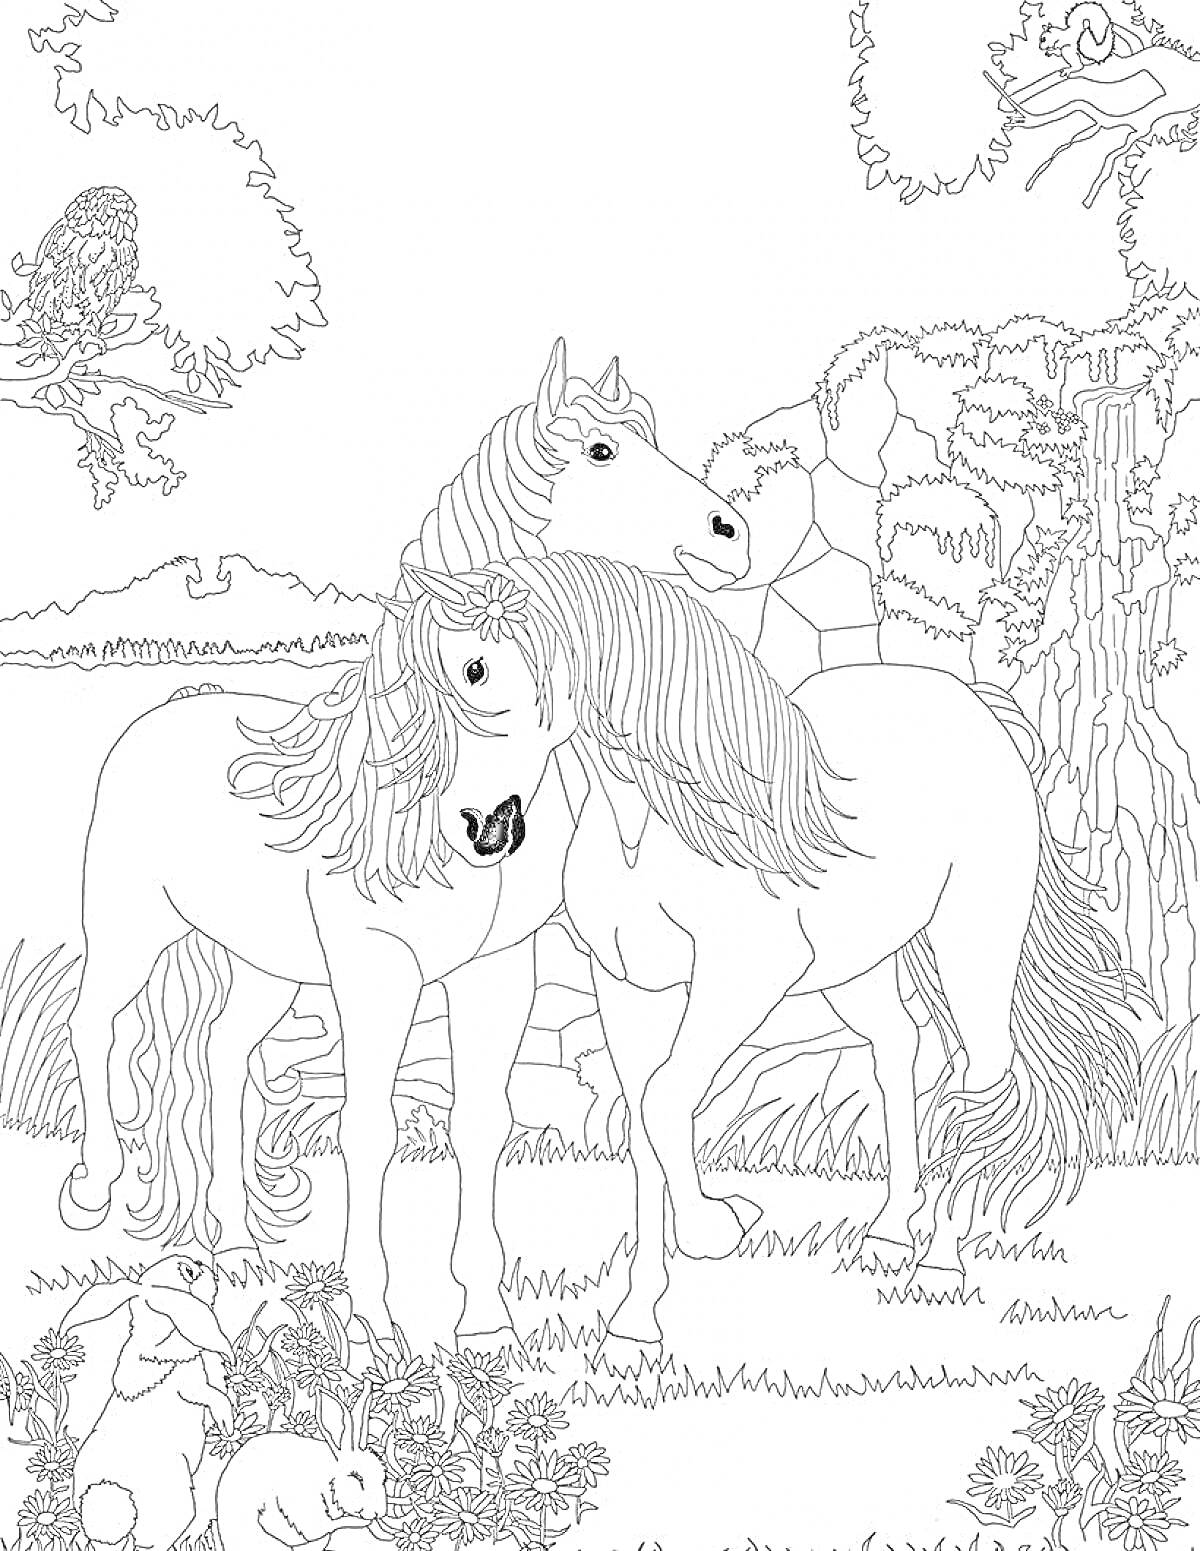 Раскраска Две лошади стоят на лужайке среди травы, вокруг них - цветы, кусты, деревья, сова на ветке, и два зайца на переднем плане